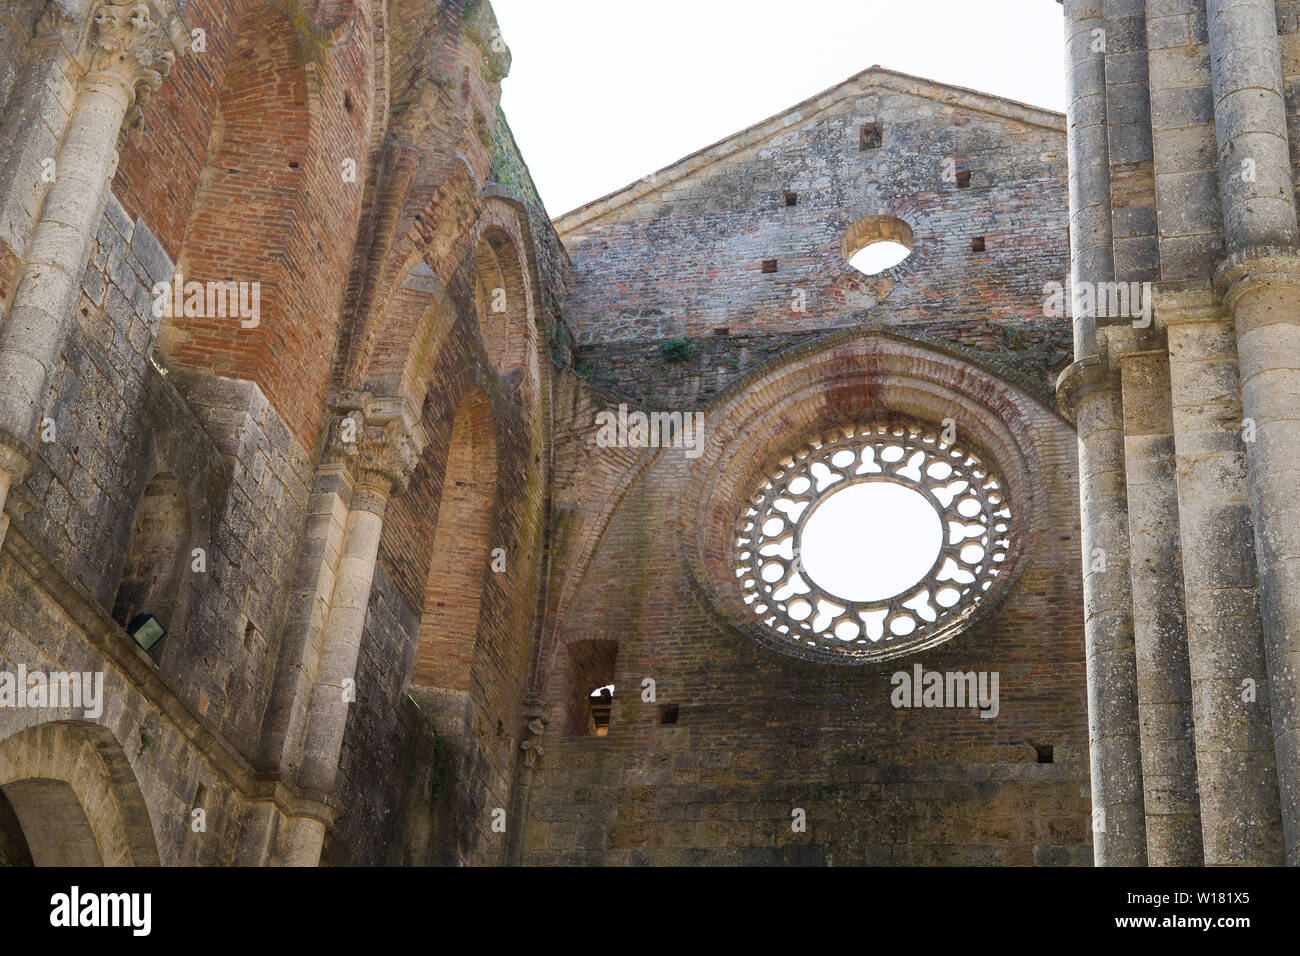 Dettaglio di un rosone in stile gotico scoperchiata abbazia di San Galgano. Chiusdino, Toscana, Italia. Foto Stock